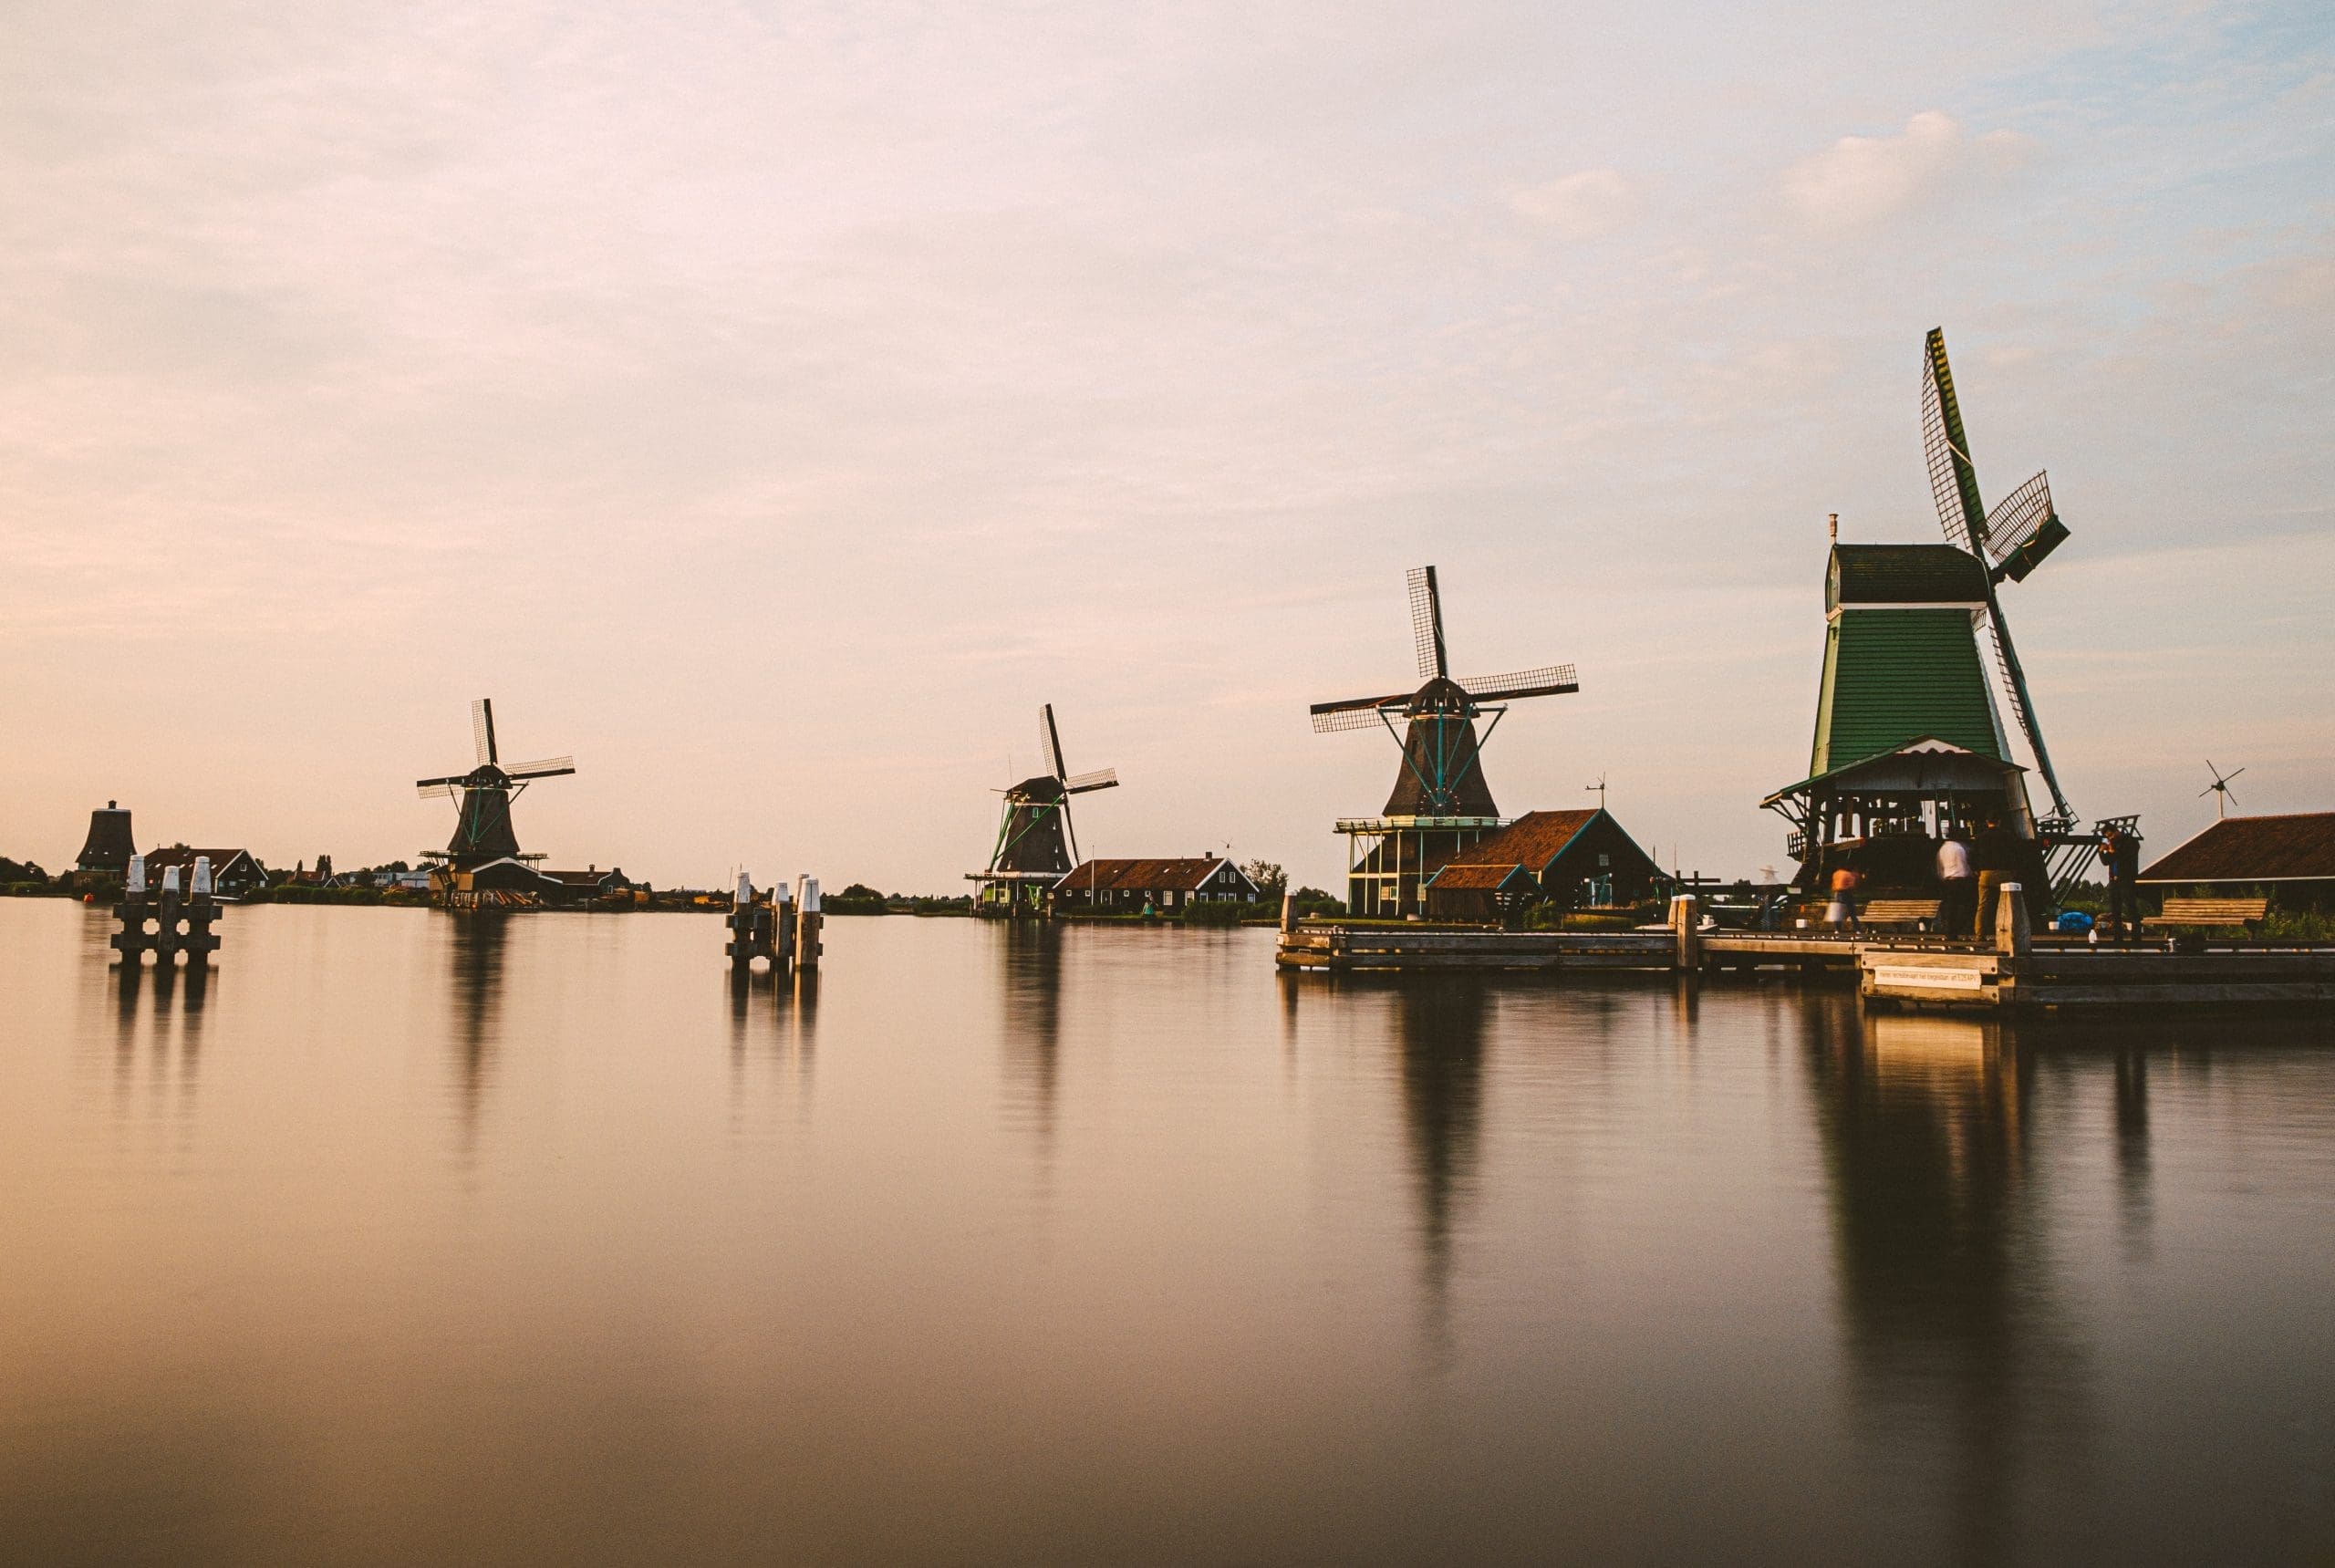 Zaanse Schans Windmills Tourist Attraction in the Netherlands